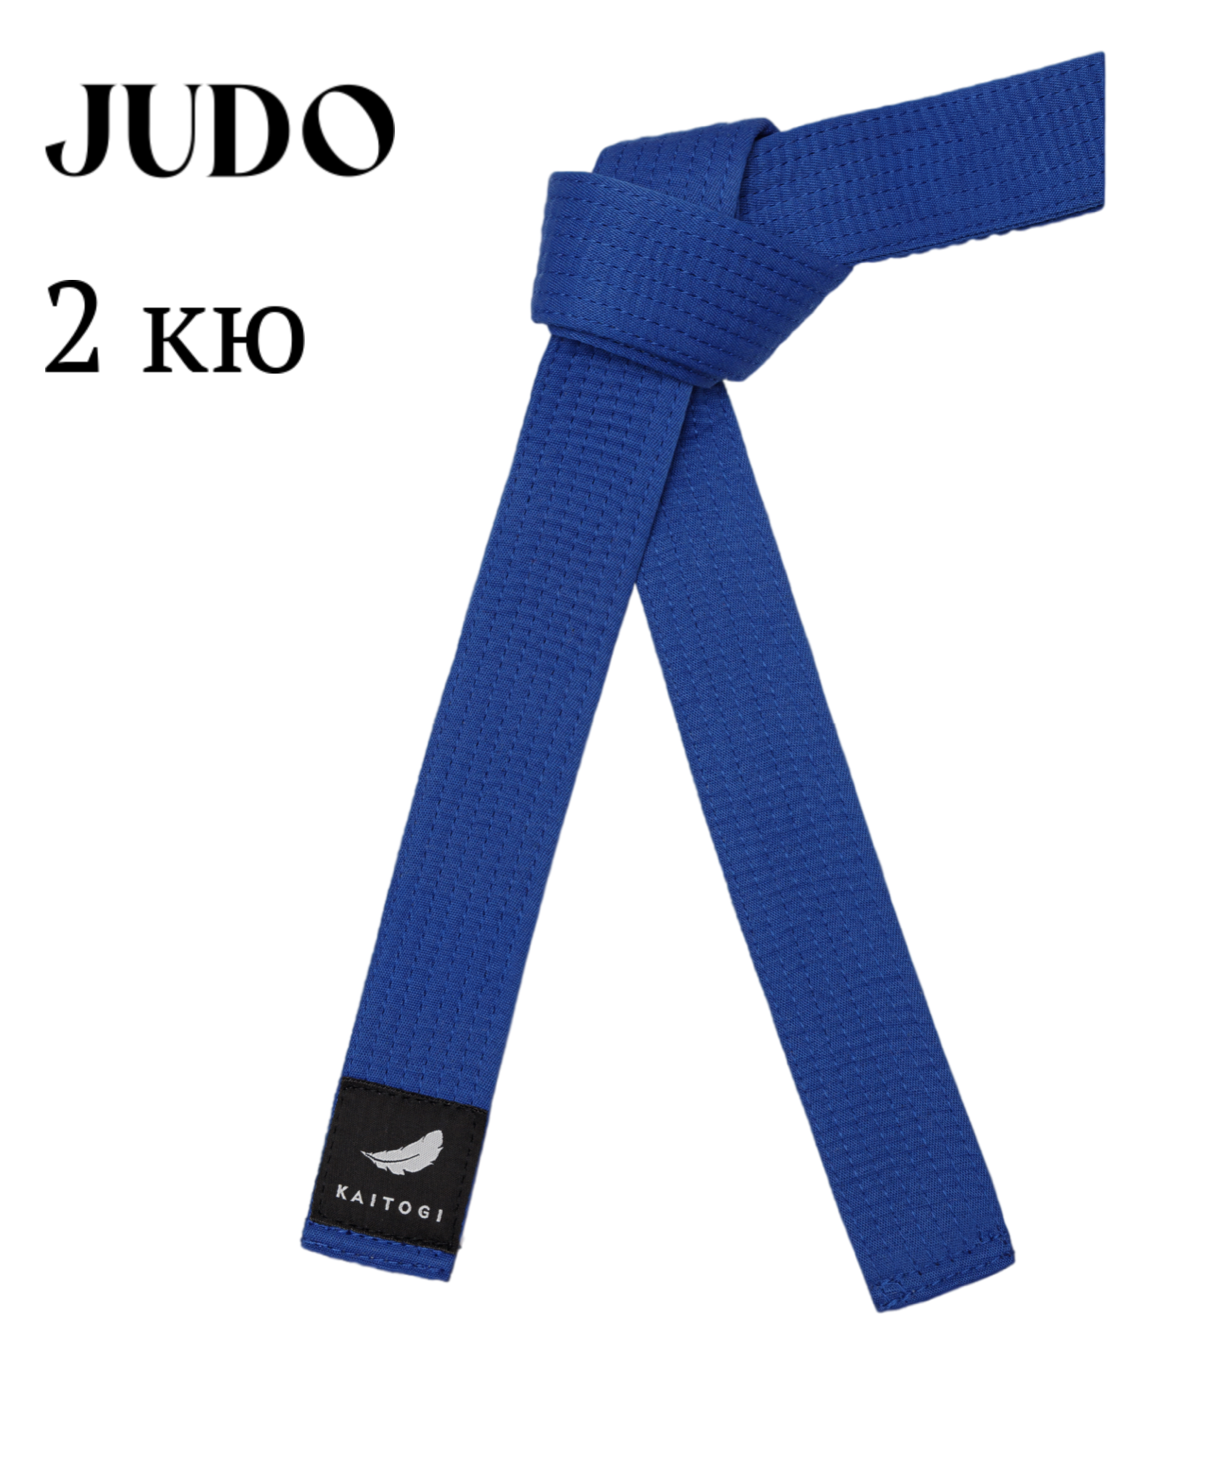 Пояс KAITOGI для дзюдо 2 кю синий 280 см